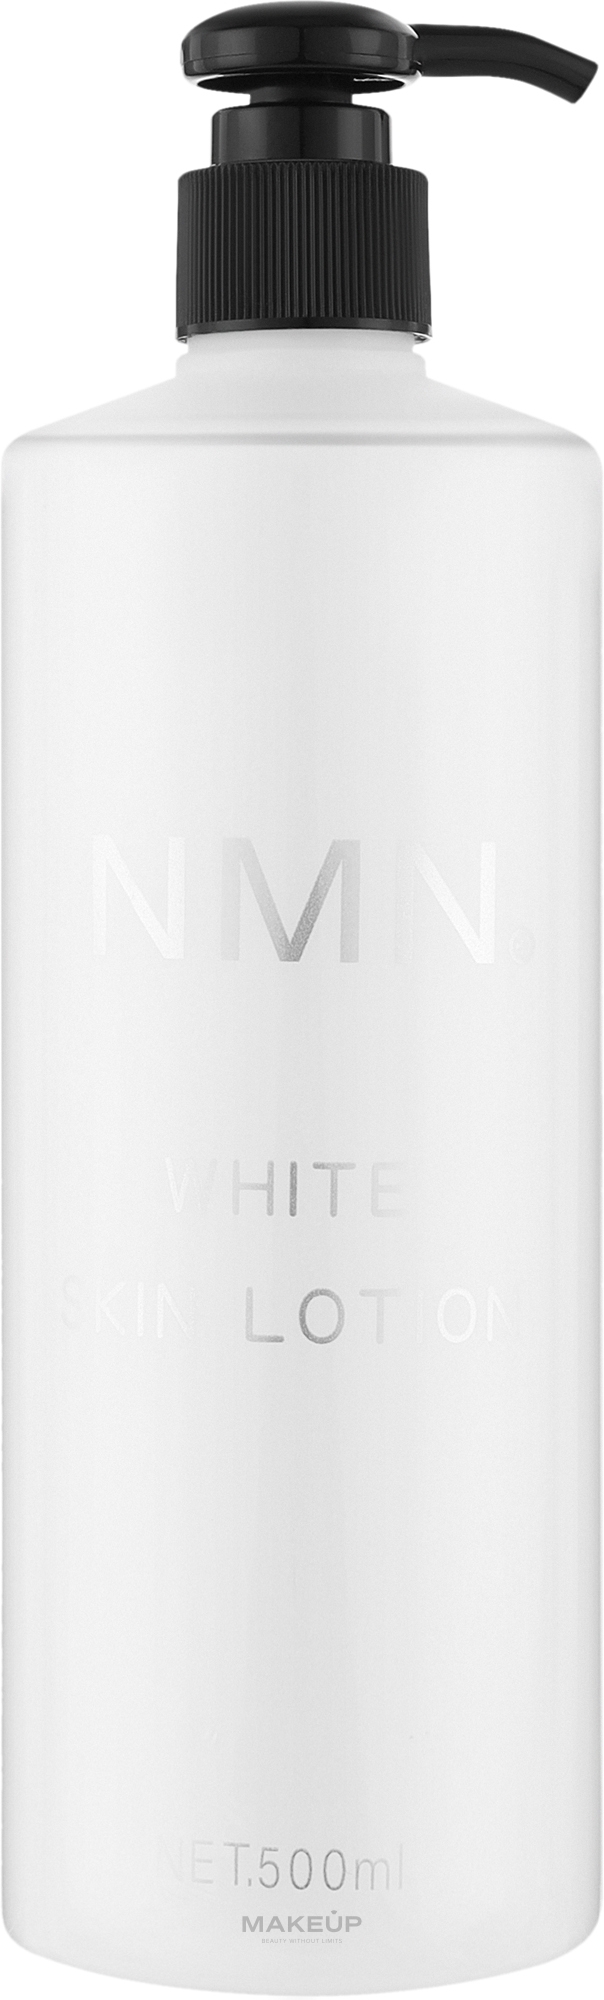 Омолоджувальний лосьйон-тонік для обличчя - Kor Japan NMN White Skin Lotion — фото 500ml